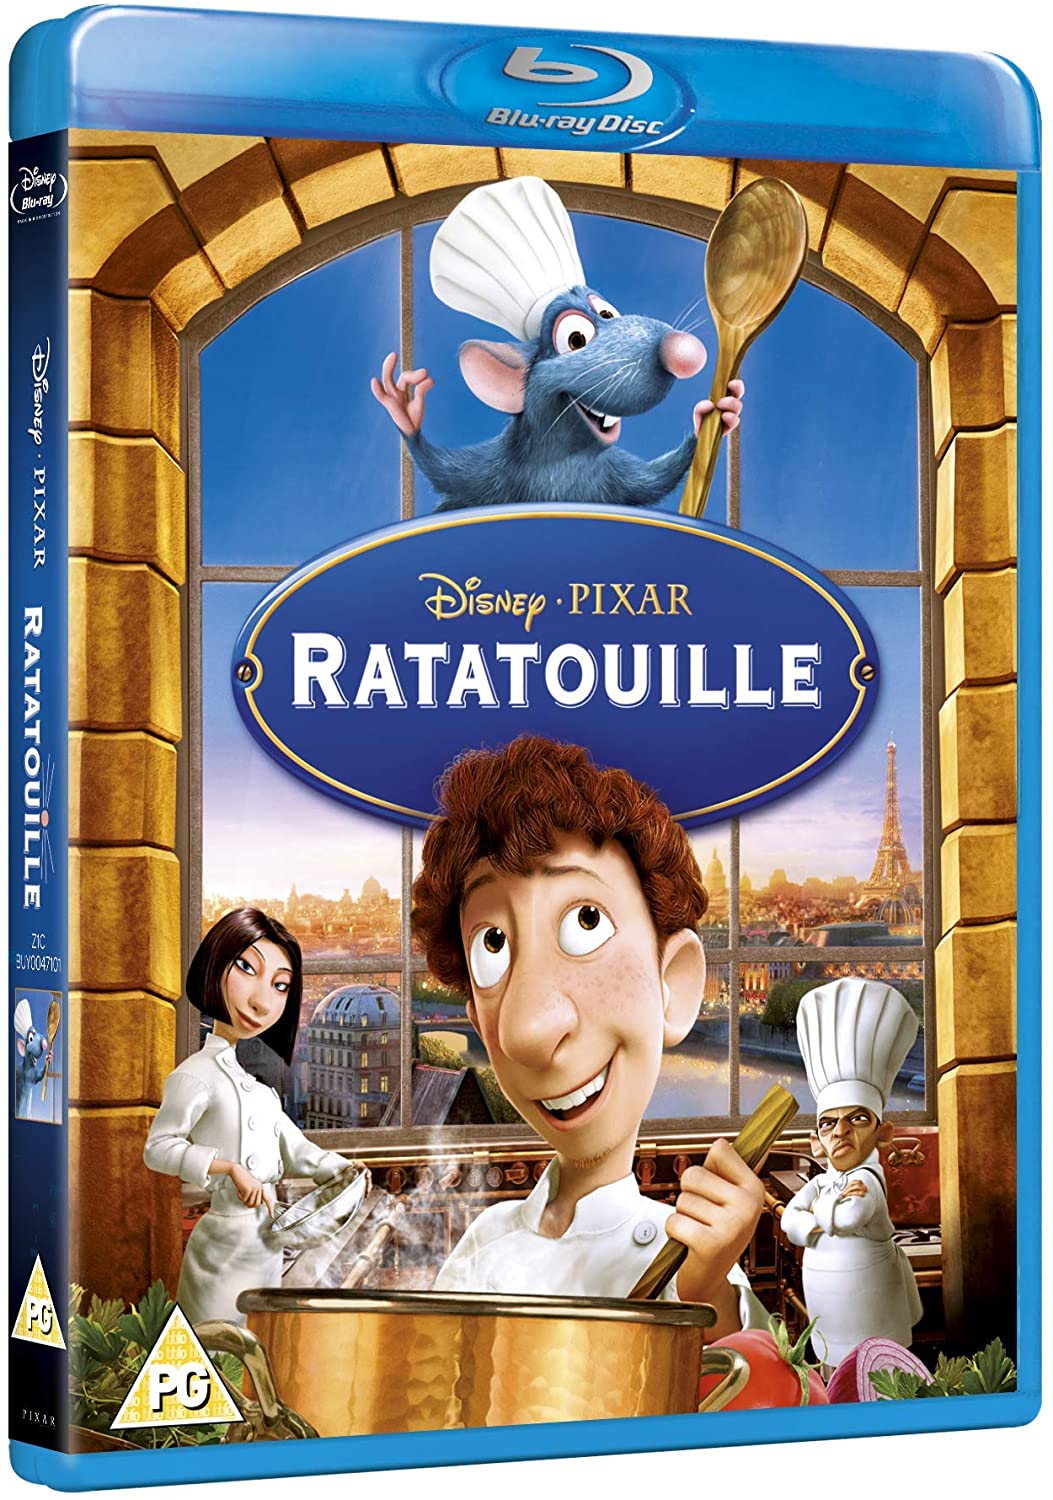 Ratatouille - Family/Comedy [Blu-ray]